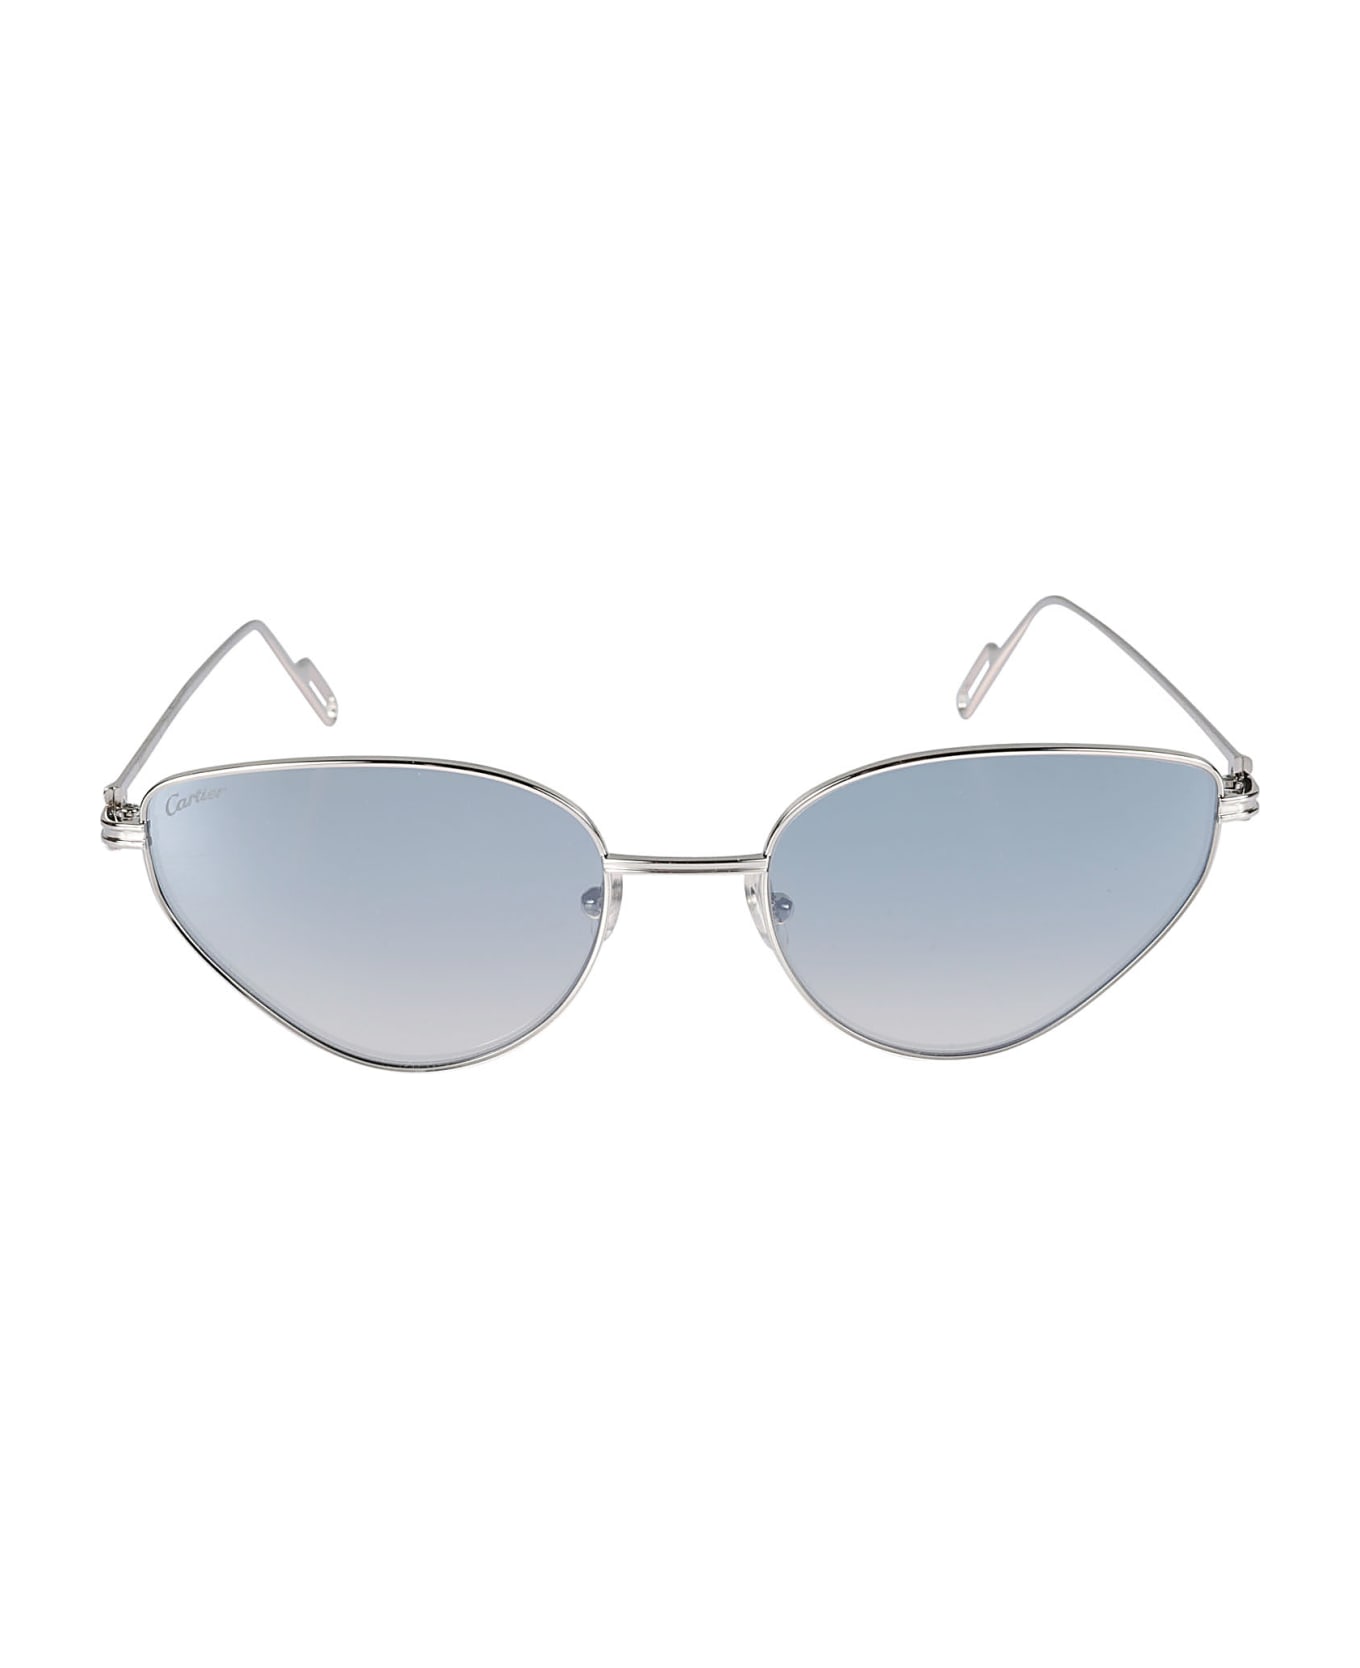 Cartier Eyewear Cat-eye Sunglasses - 006 silver silver blue サングラス